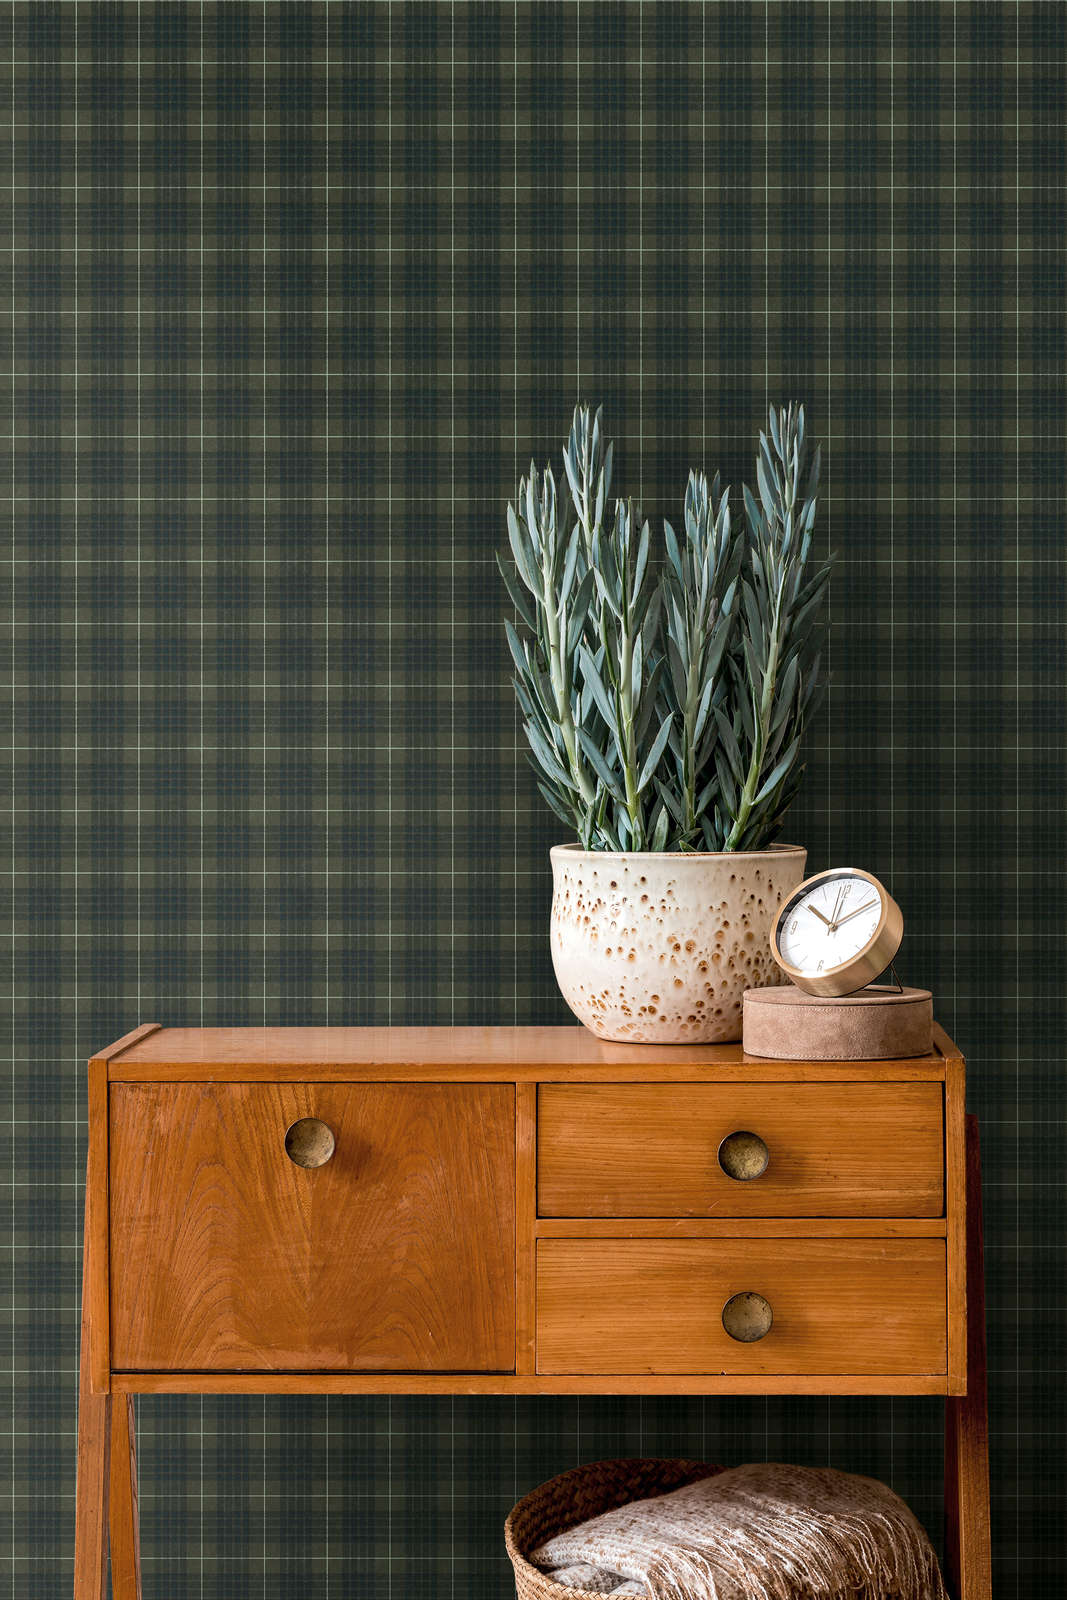             Textile look non-woven wallpaper with checkered tartan - green, black
        